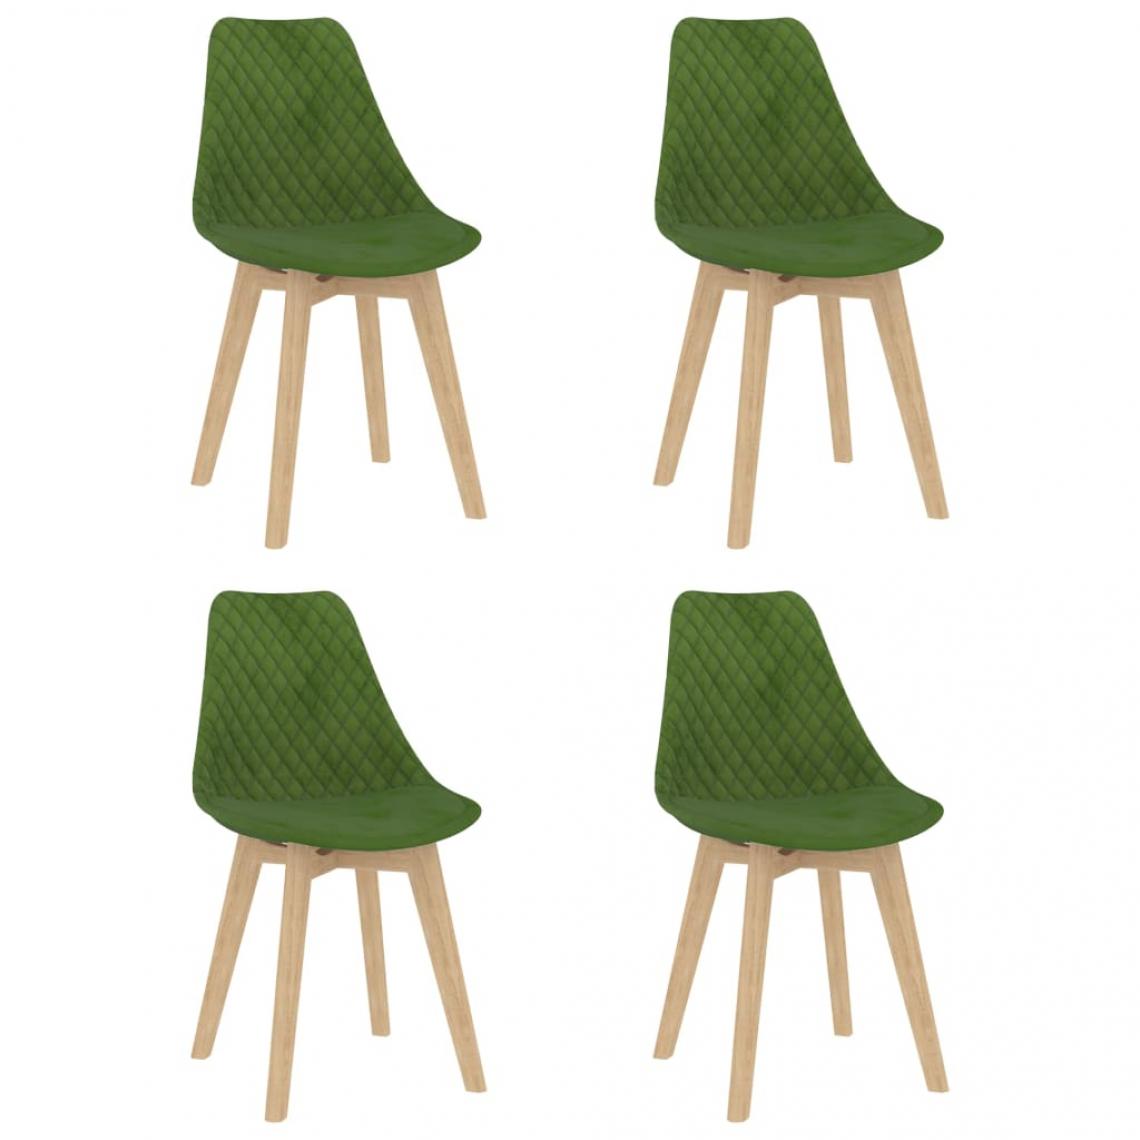 Decoshop26 - Lot de 4 chaises de salle à manger cuisine design moderne velours vert clair CDS022015 - Chaises